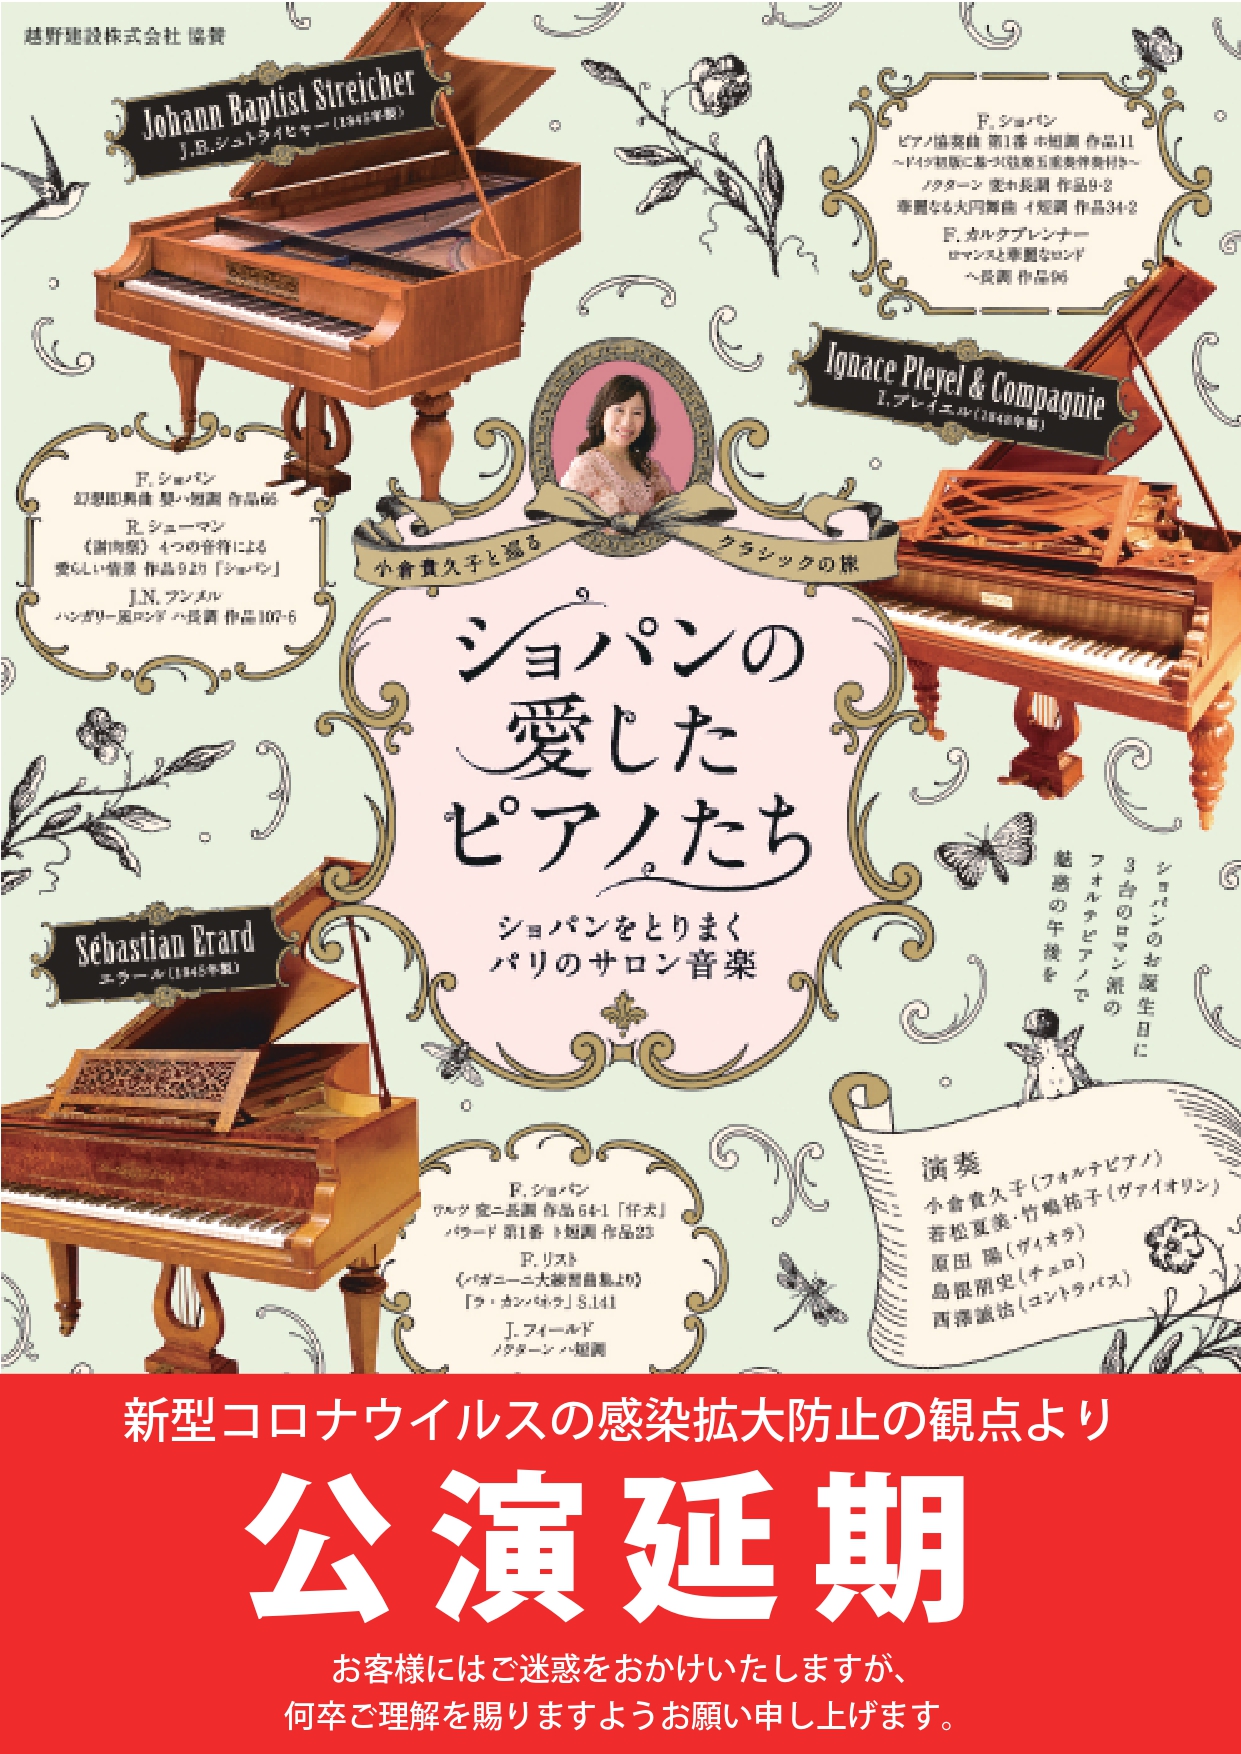 ＜延期＞小倉貴久子と巡るクラシックの旅vol.2 ショパンの愛したピアノたち〜ショパンをとりまくパリのサロン音楽〜の画像